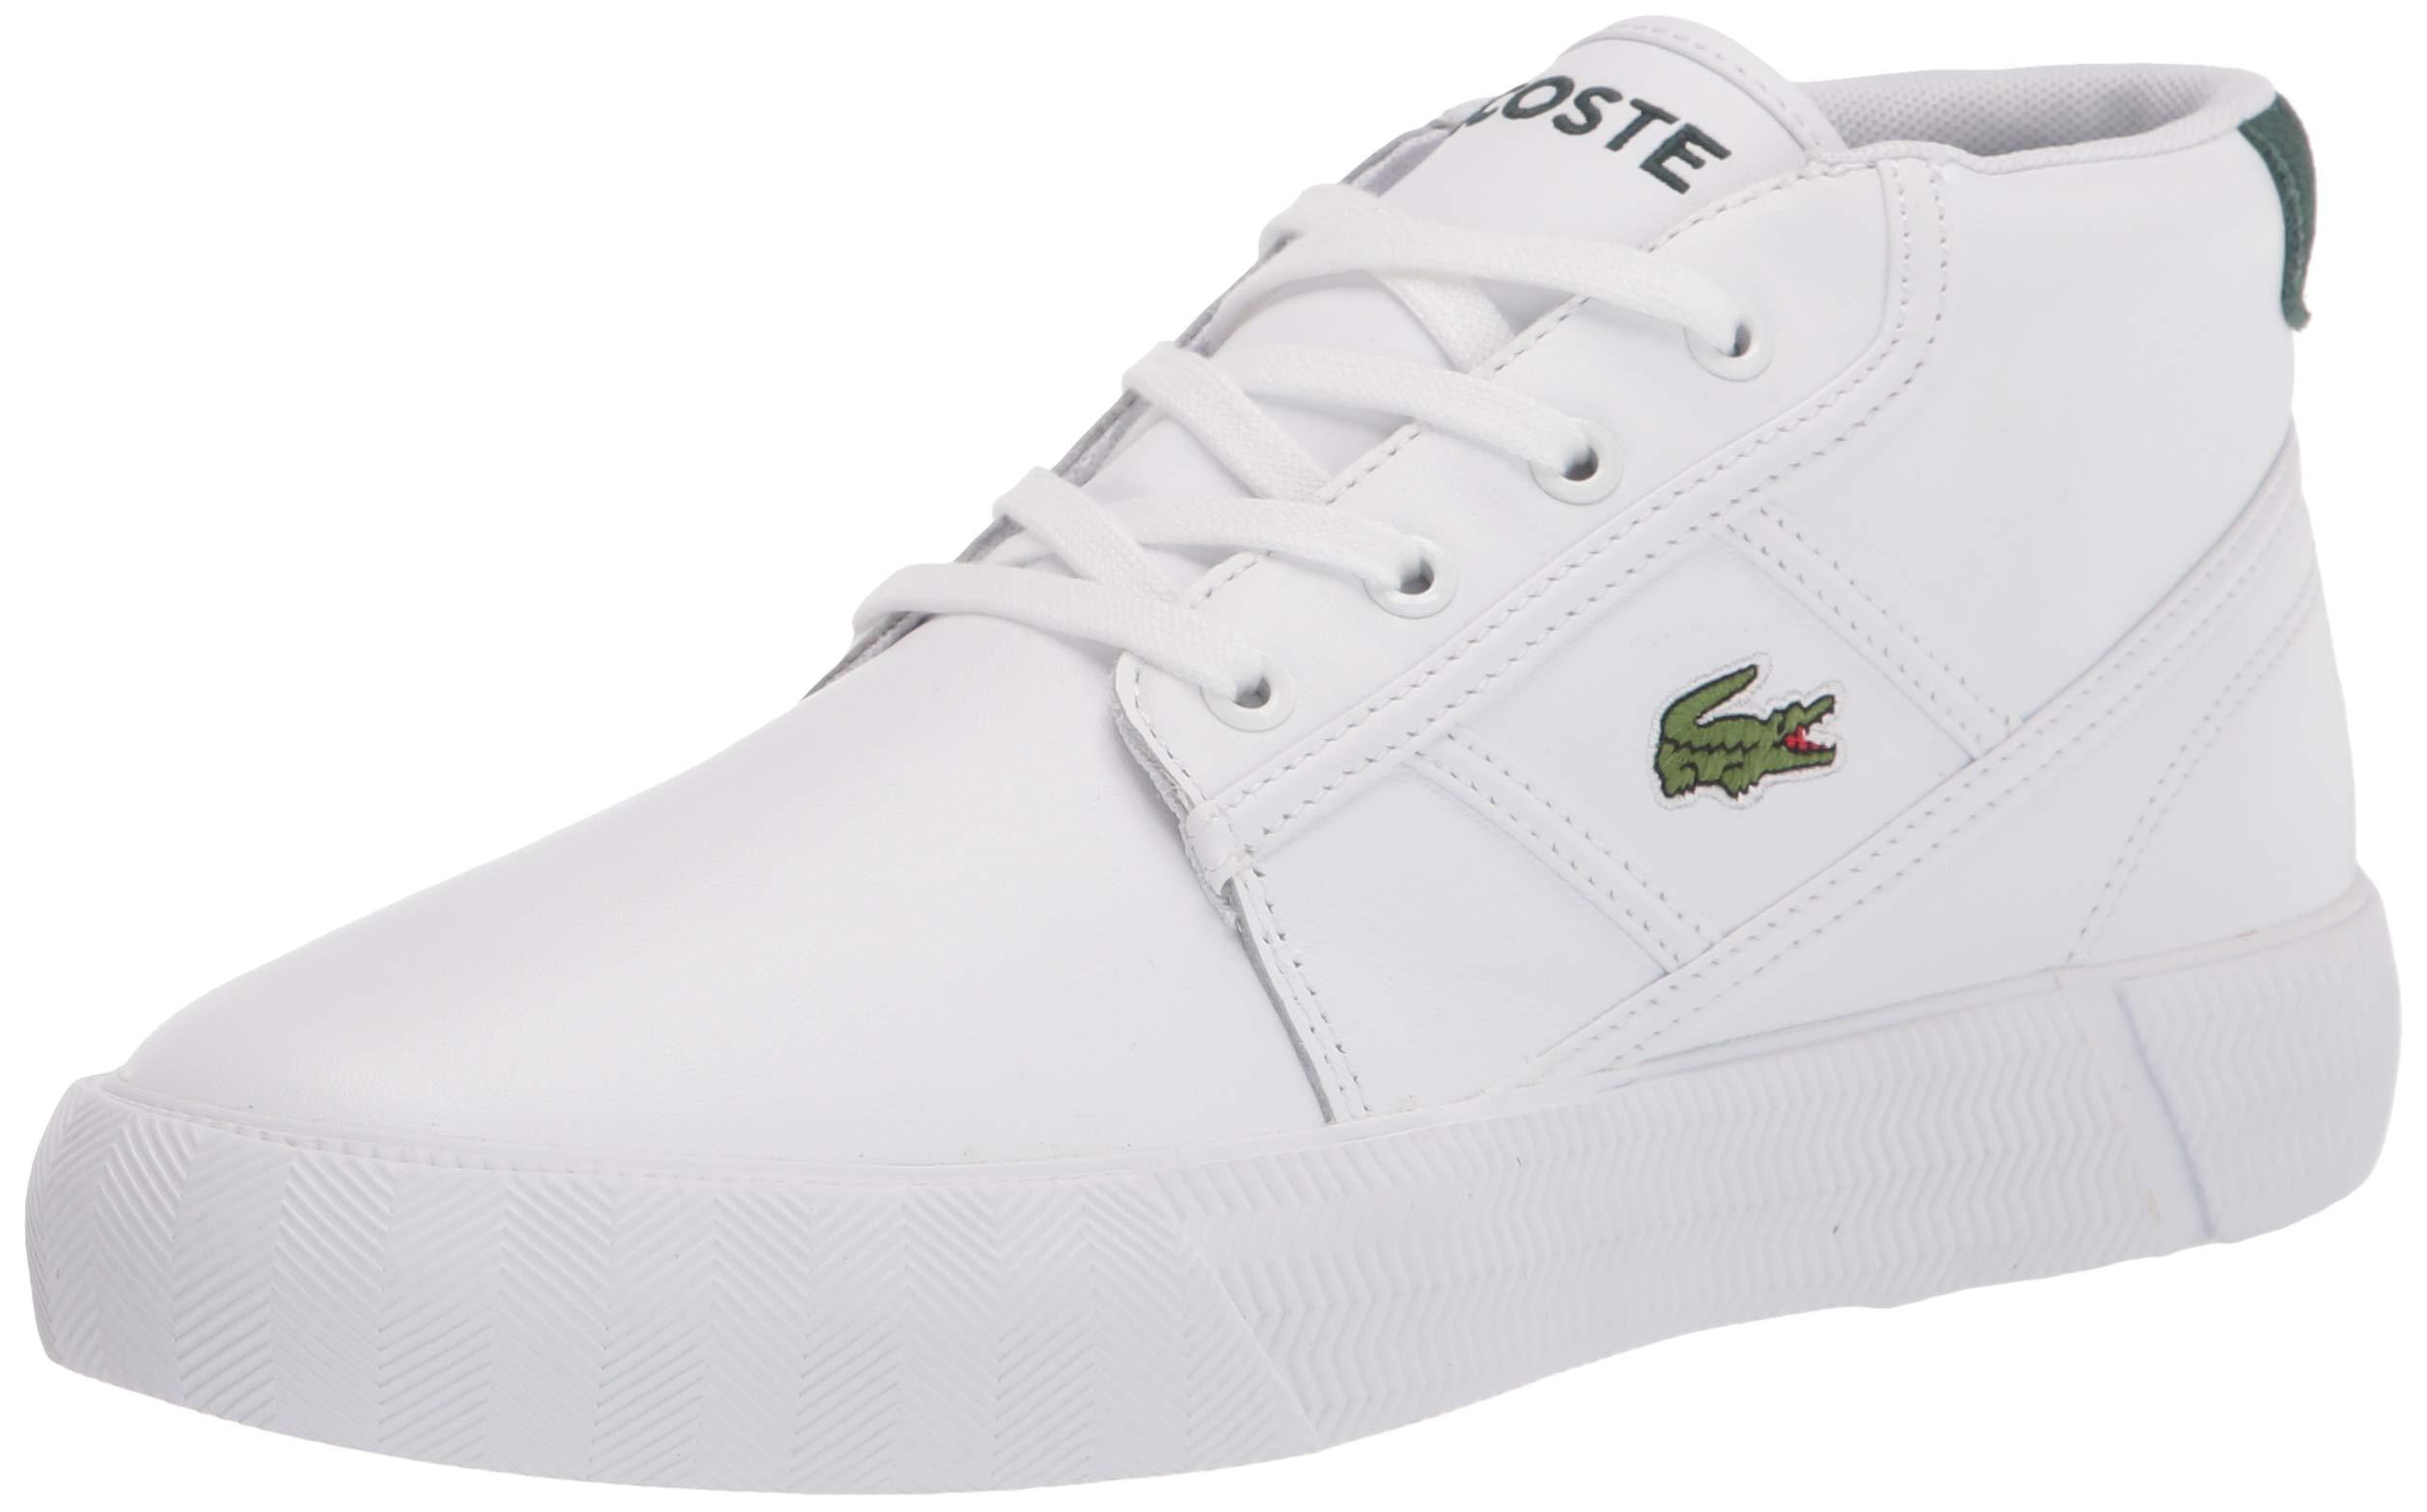 Lacoste Mens Gripshot Chukka Sneaker in White/Dark Green (White) for Men -  Save 11% | Lyst